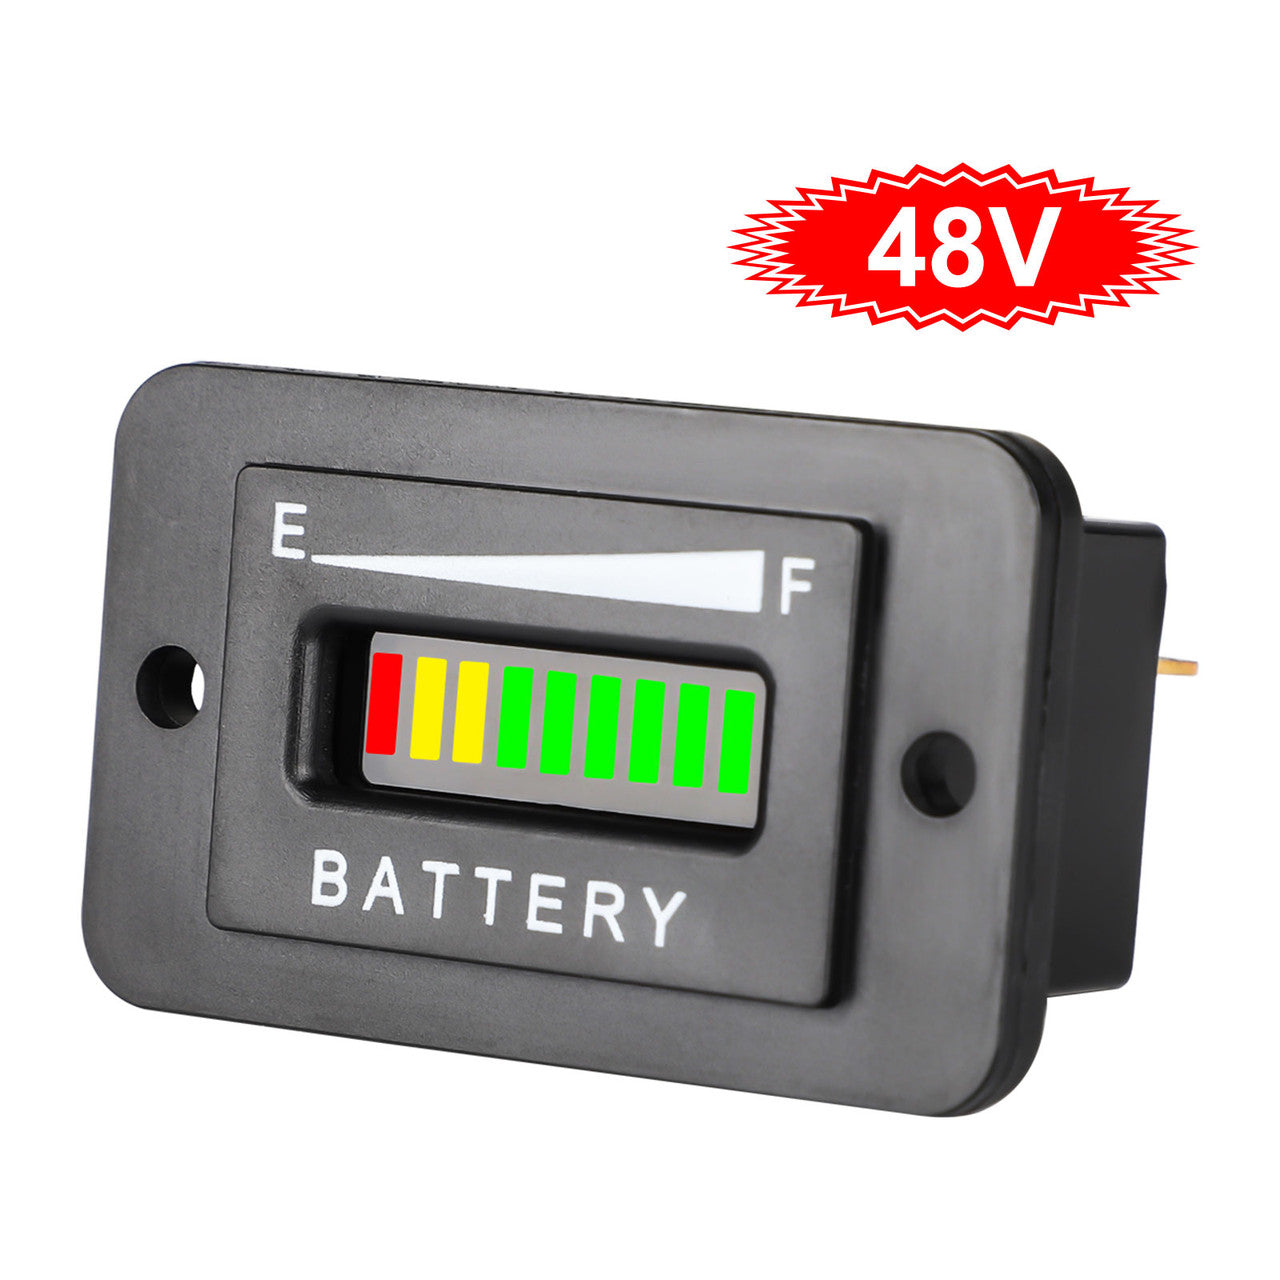 Meter Indicator Volt Battery Gauge for Golf Cart Motor, 48V